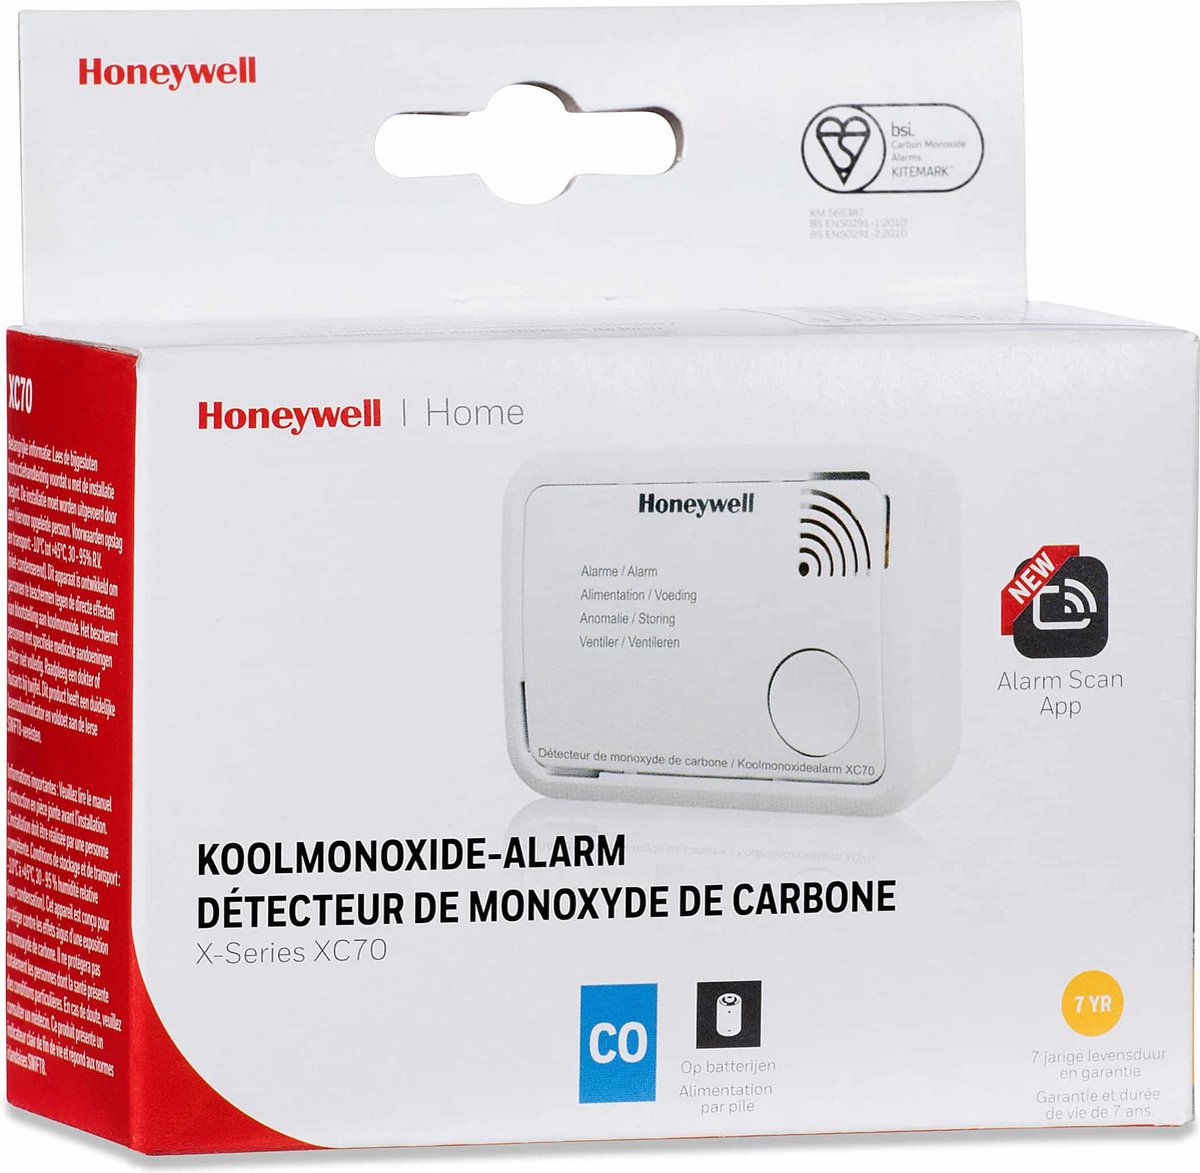 Honeywell XC70-IT Dispositif dalarme pour monoxyde de Carbone à Pile XC70 